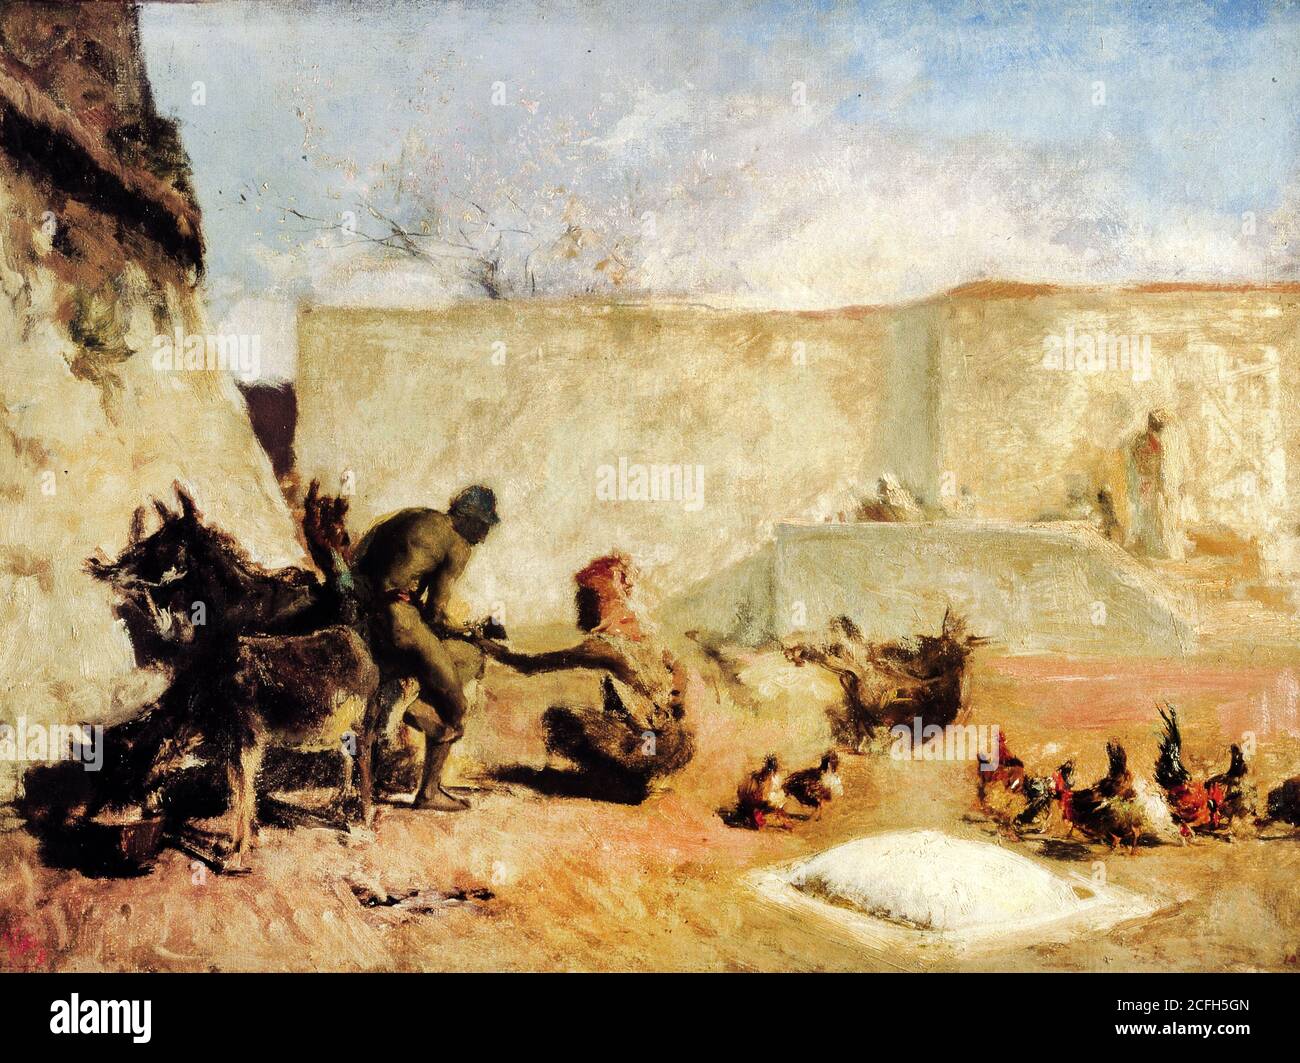 Maria Fortuny, Horseshoer marocain, Circa 1870, huile sur toile, Museu Nacional d'Art de Catalunya, Barcelone, Espagne. Banque D'Images